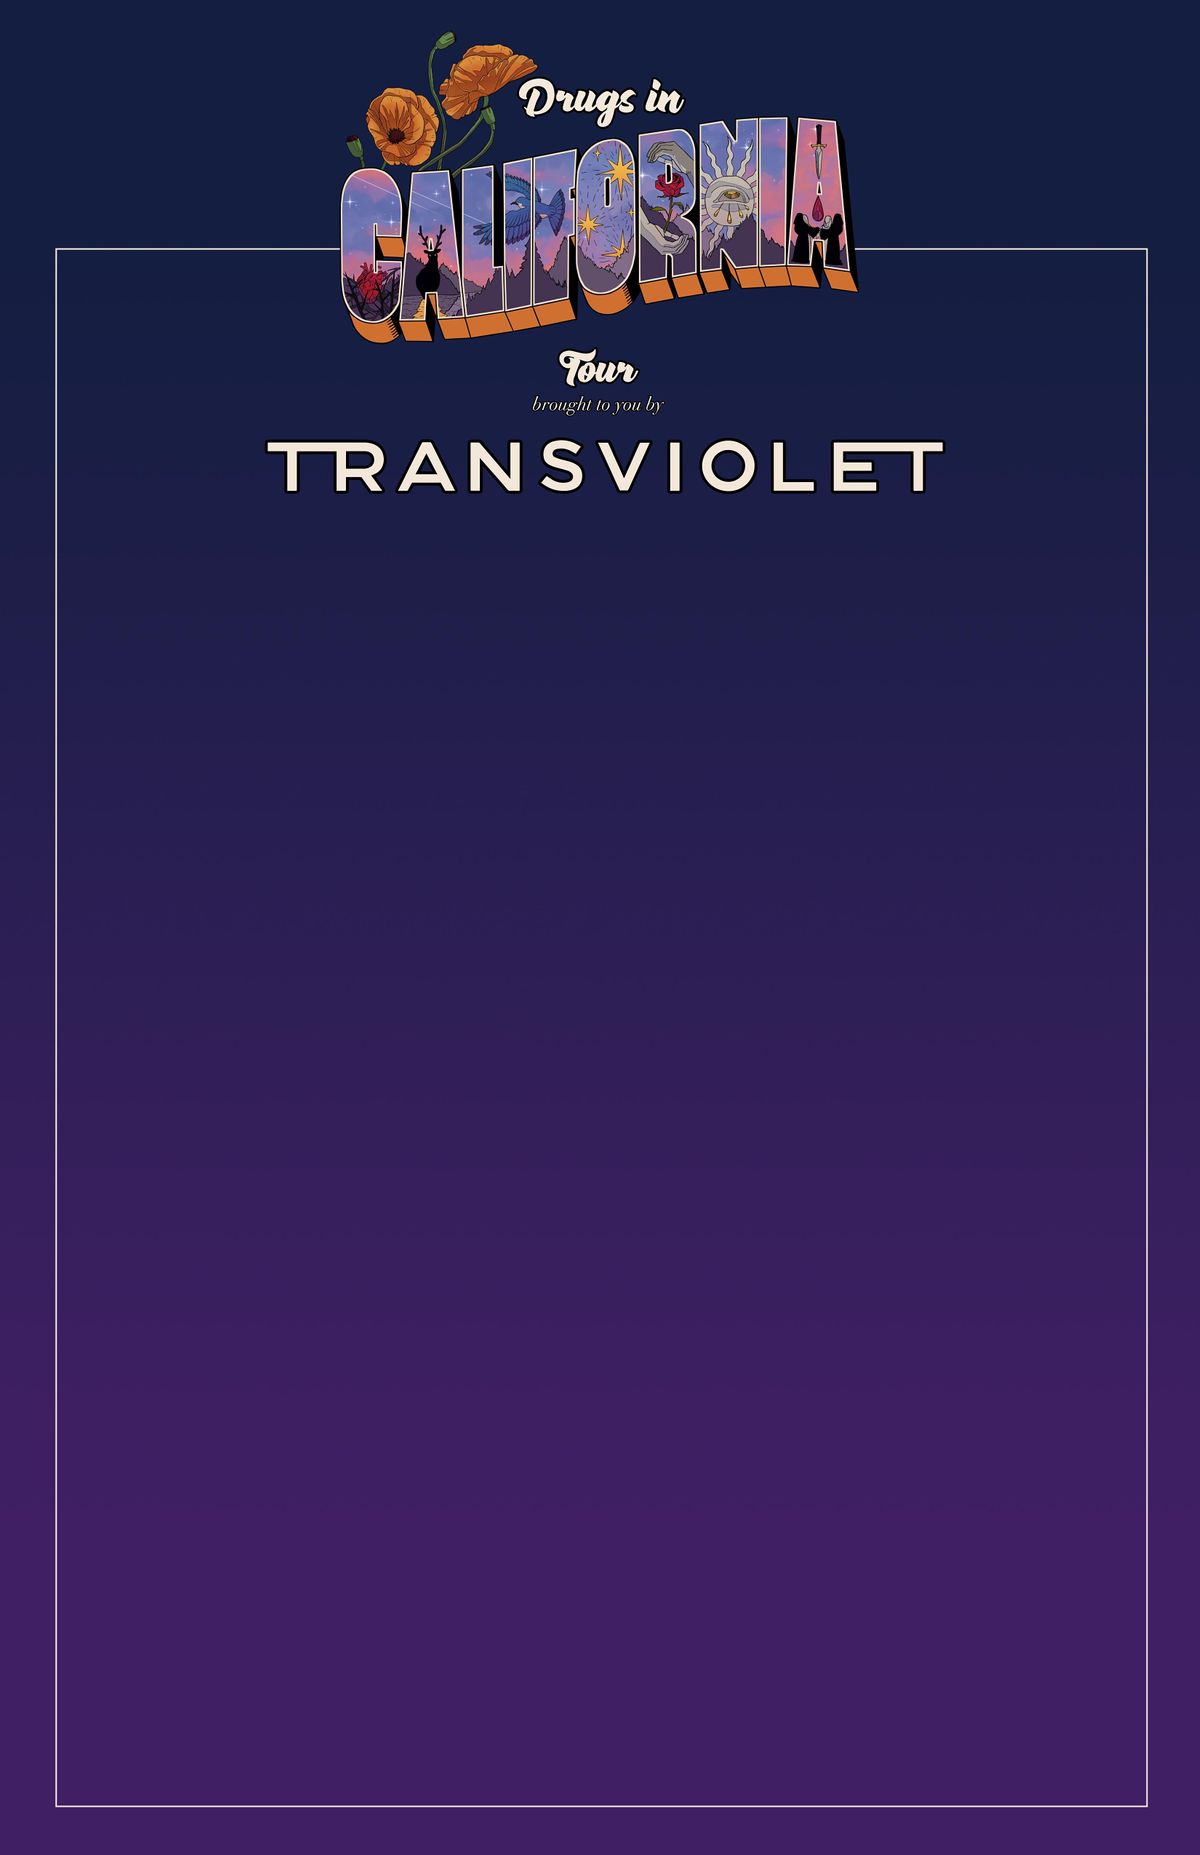 Transviolet - Drugs in California Tour